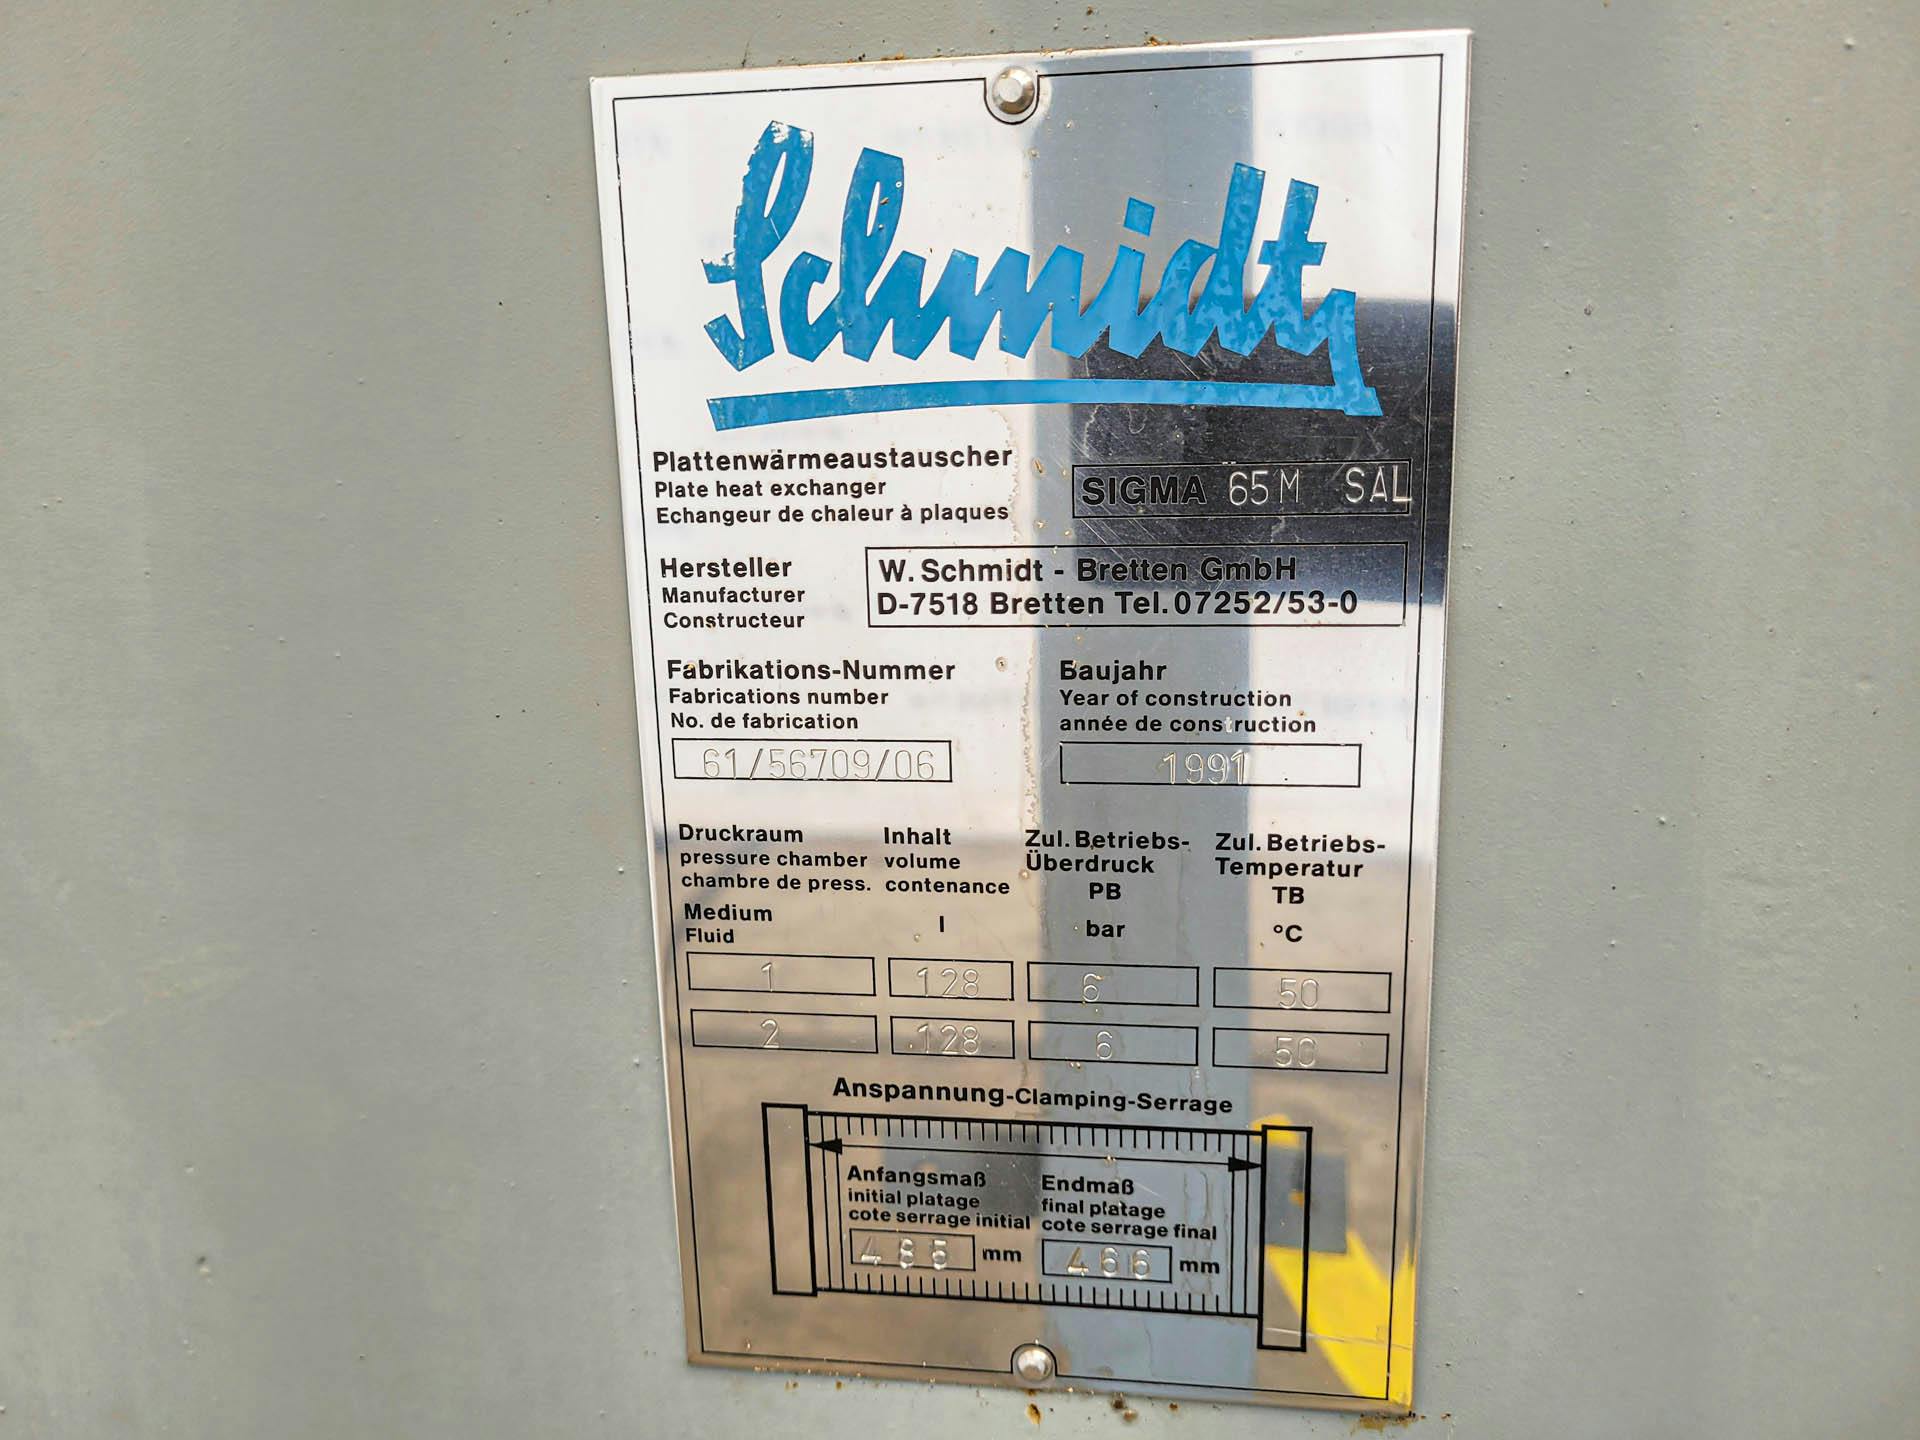 Schmidt Sigma 65M SAL - Echangeur de chaleur à plaques - image 5